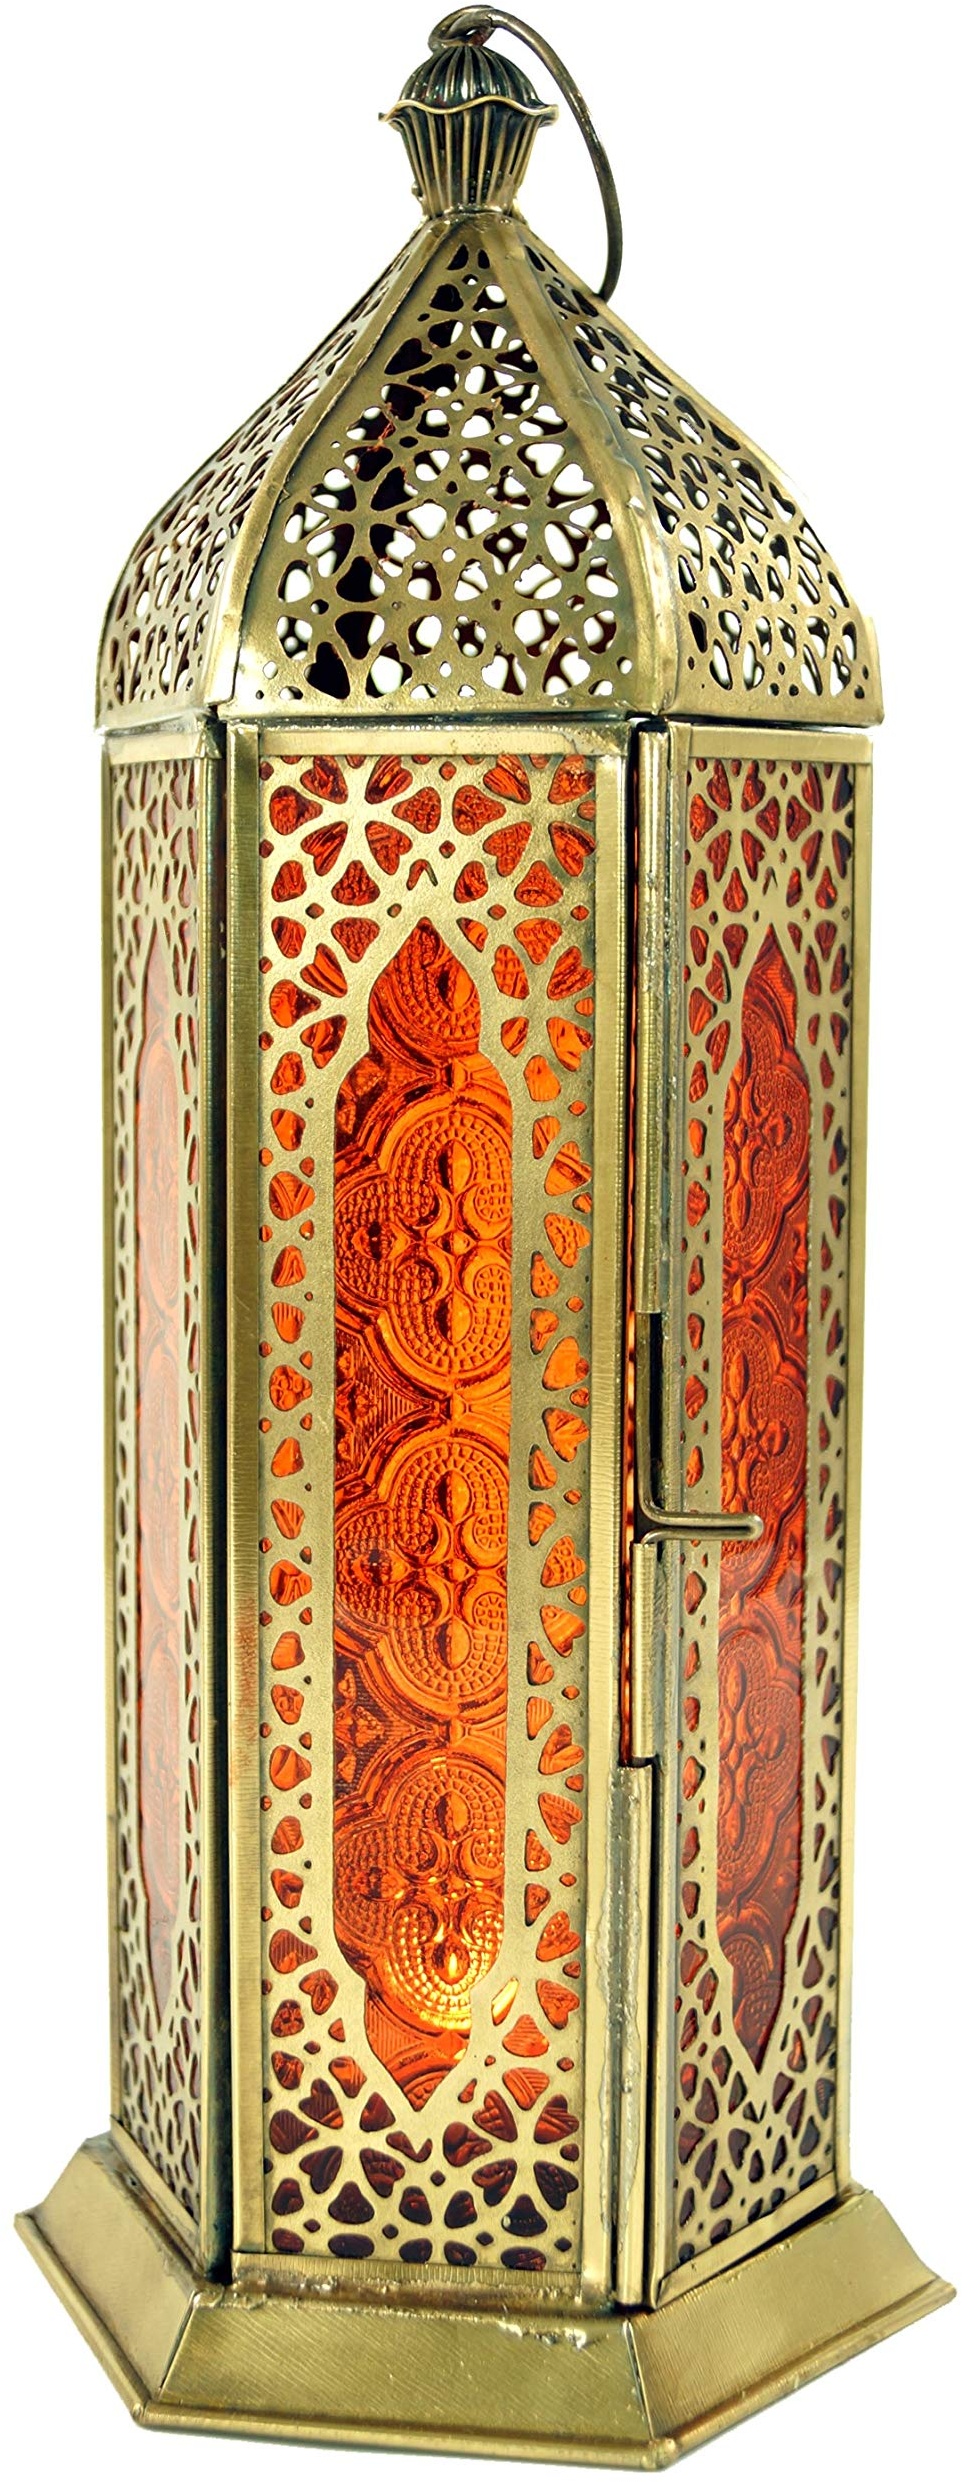 GURU SHOP Orientalische Metall/Glas Laterne in Marrokanischem Design, Windlicht, Orange, Farbe: Orange, 27x10,5x10,5 cm, Orientalische Laternen